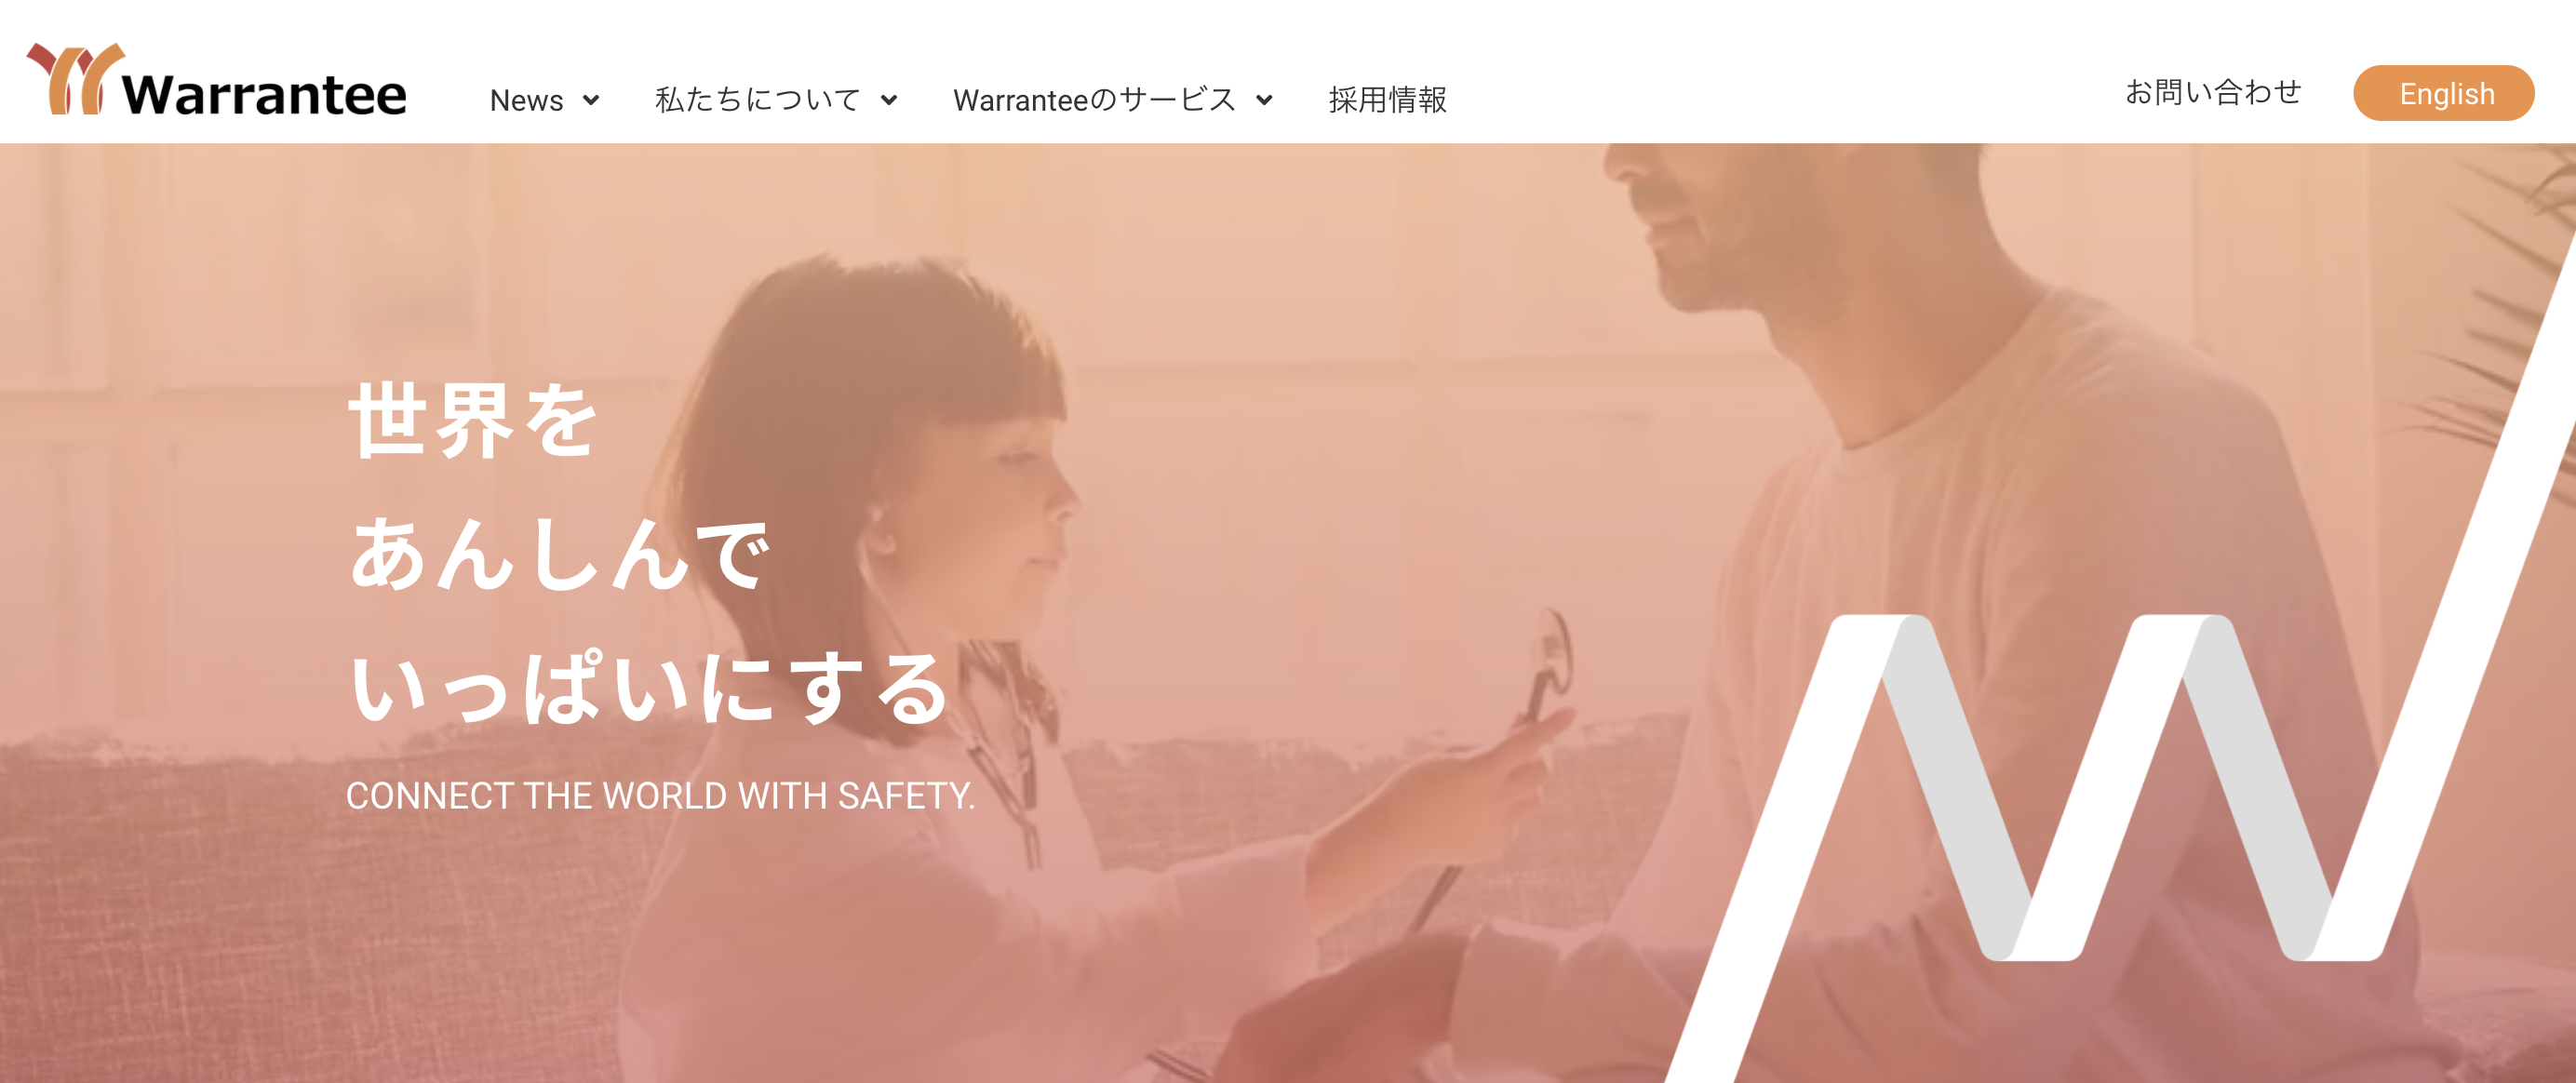 日本のベンチャーWarranteeが米ナスダック市場に上場申請、保険の無償化をグローバルに